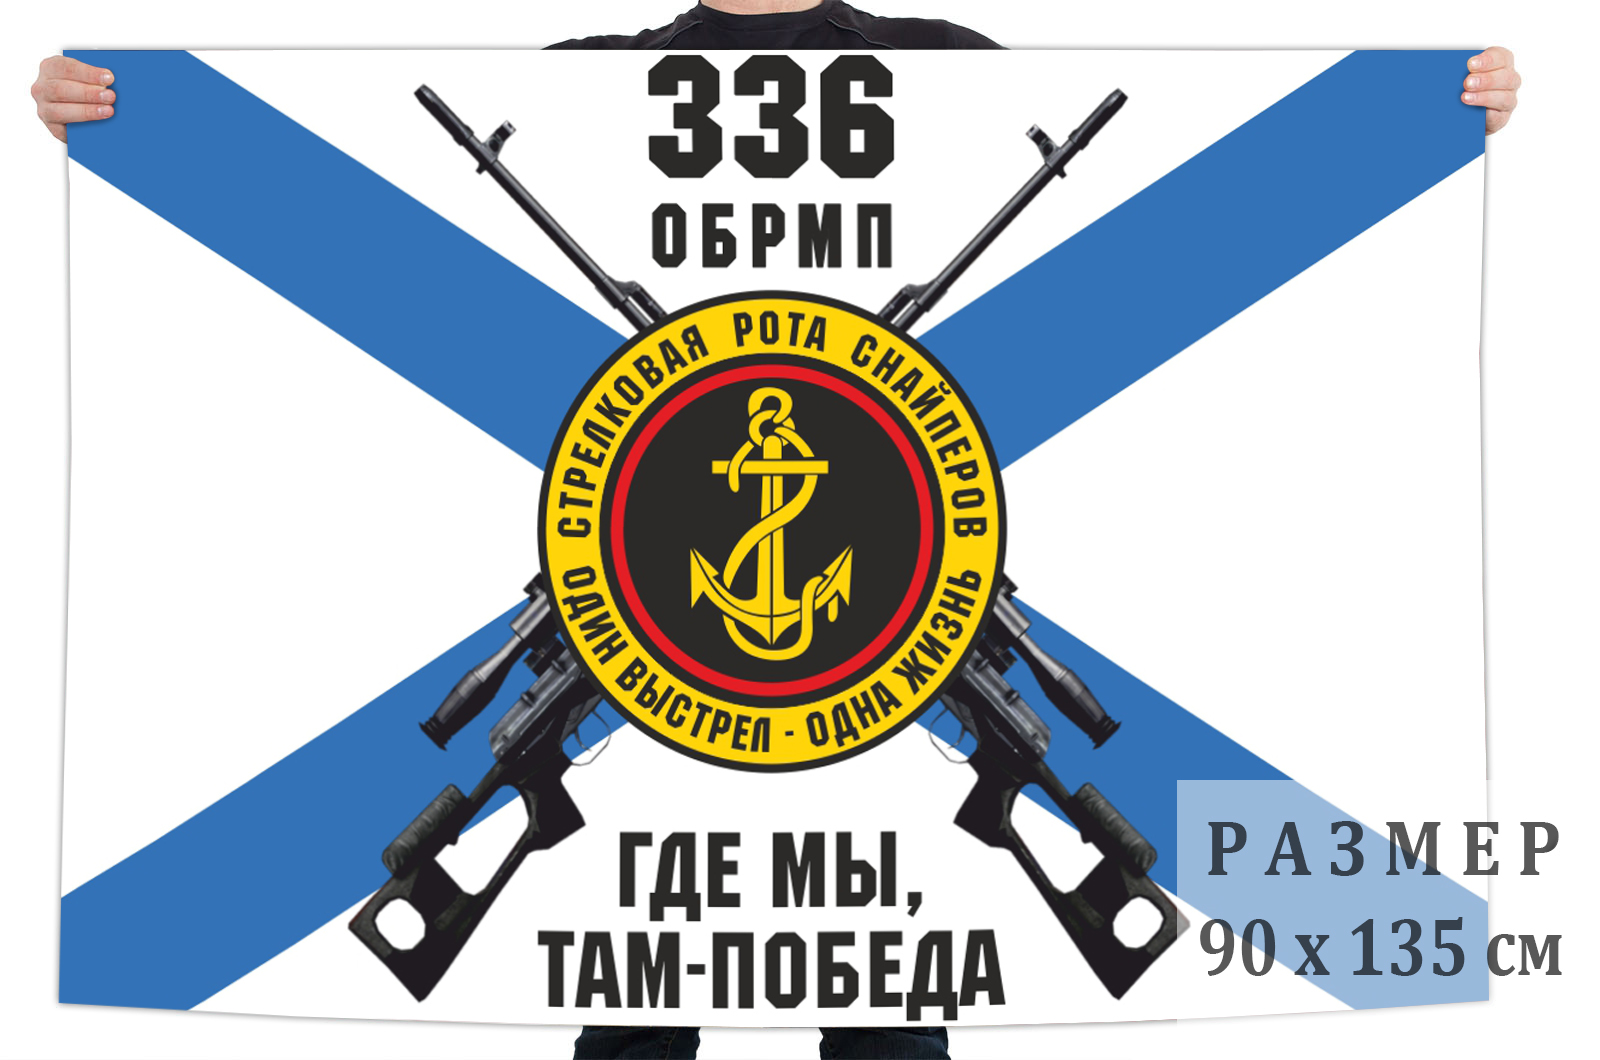 Флаг роты снайперов 336 отдельной бригады морской пехоты